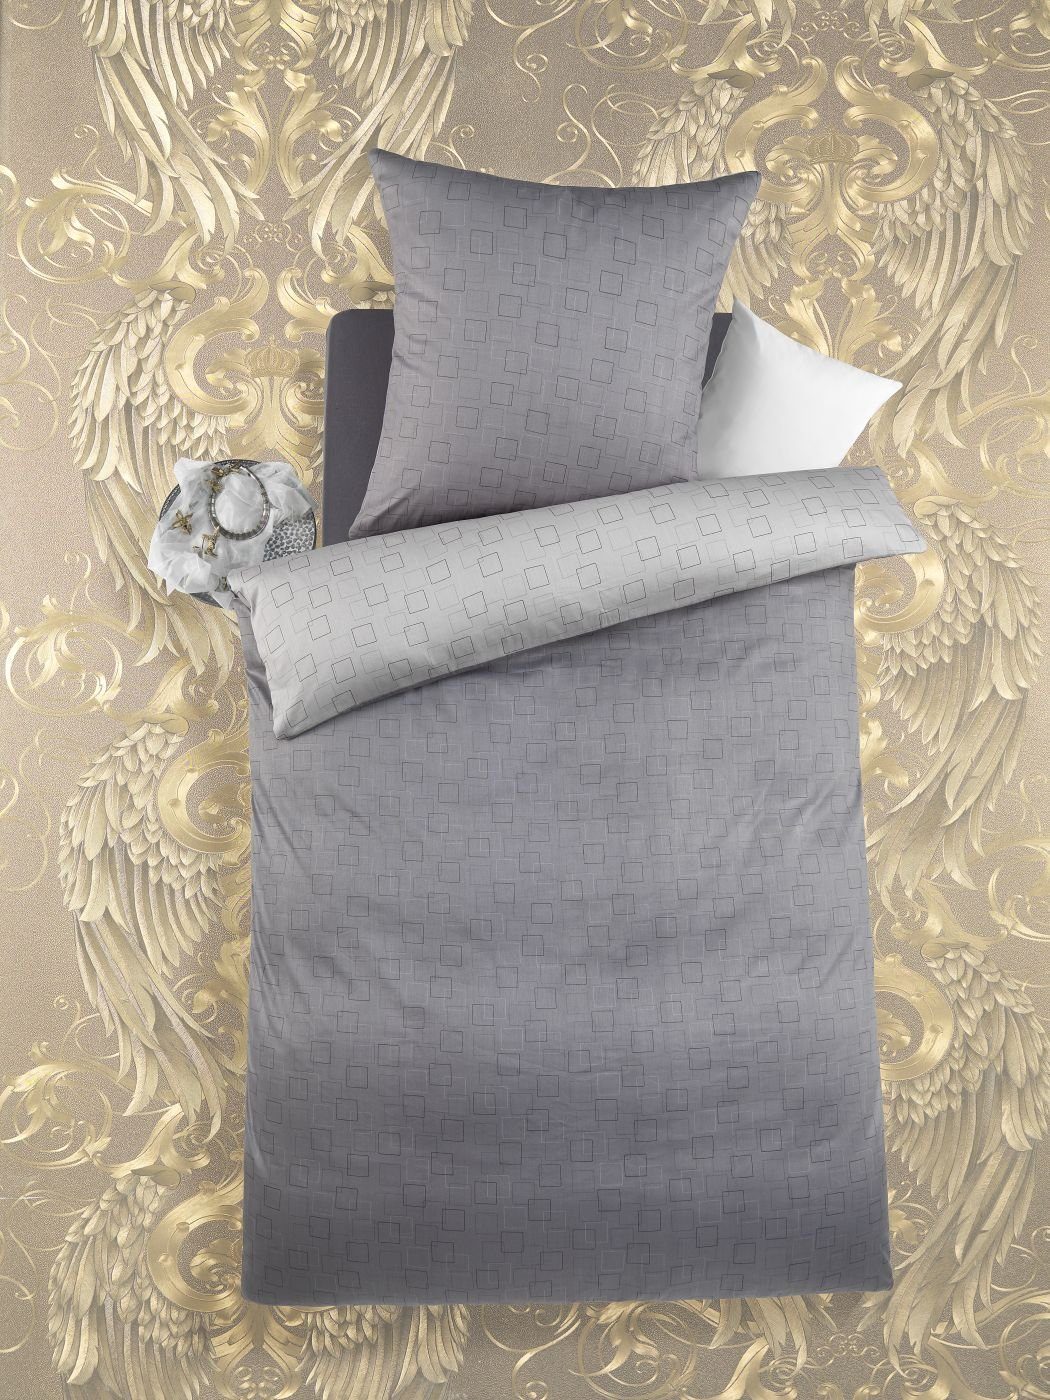 Bettwäsche Bettwäsche 135 cm x 200 cm Wende grau, Optidream, Baumolle, 2 teilig, Bettbezug Kopfkissenbezug Set kuschelig weich hochwertig